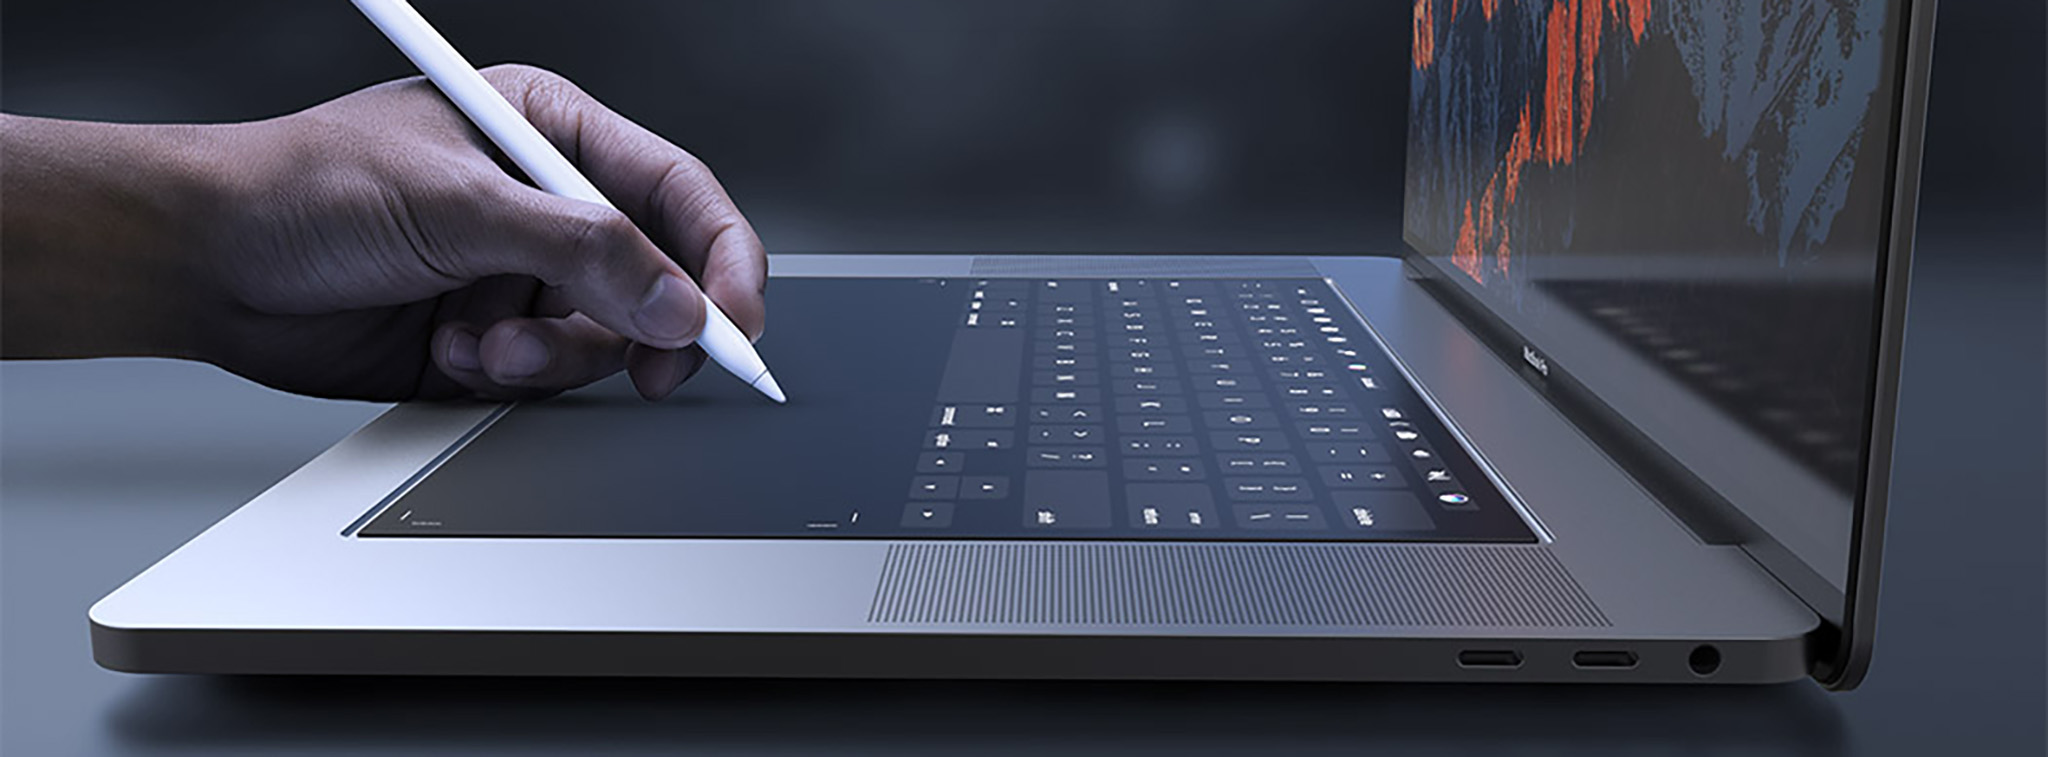 Apple tiếp tục đệ trình các sáng chế về bàn phím ảo trên MacBook, liệu có thành sản phẩm thực tế?